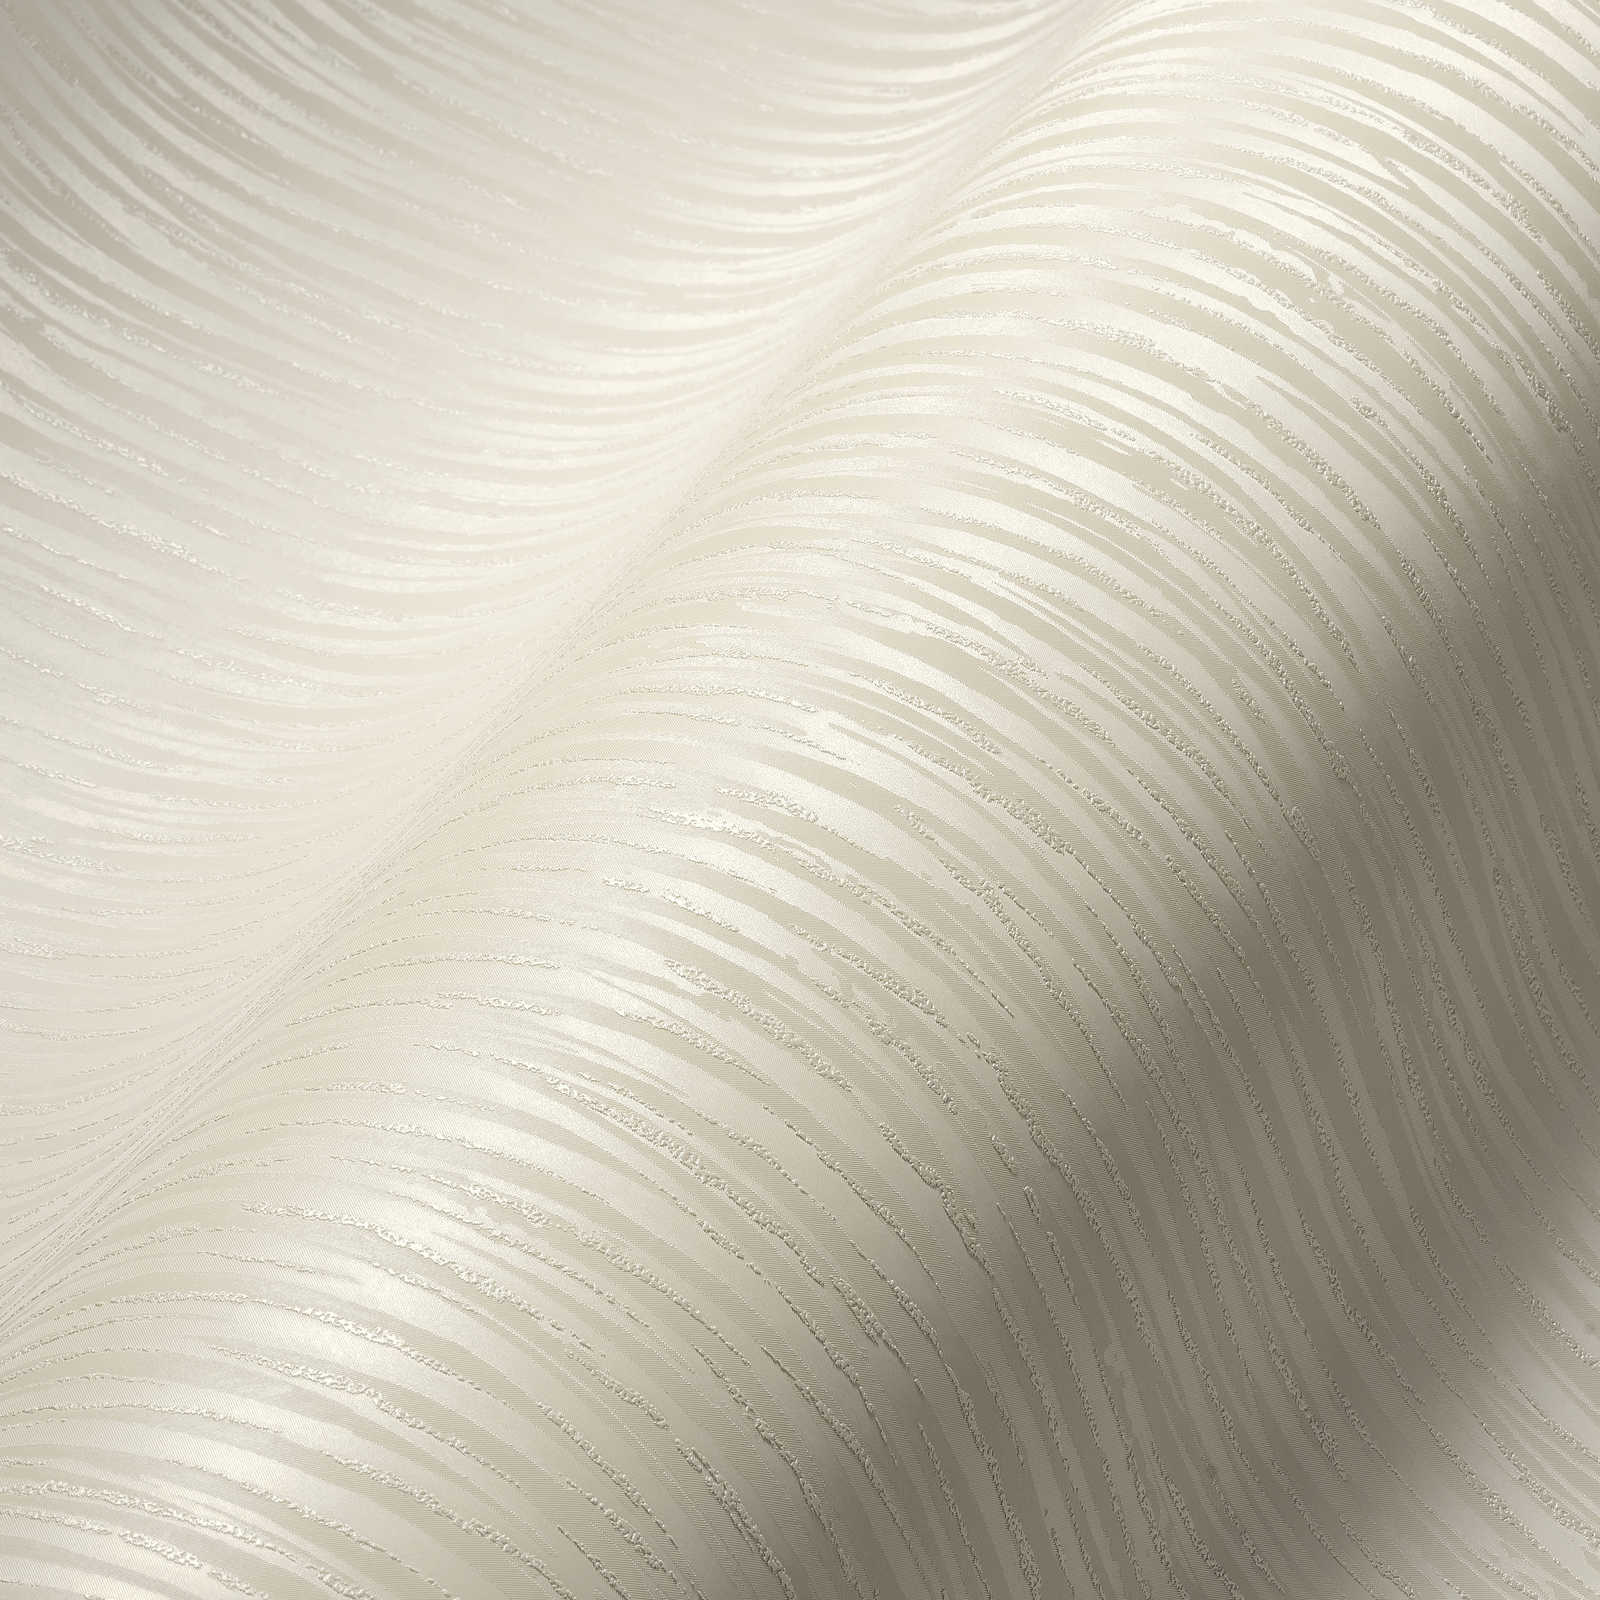             Papier peint uni crème avec éclat métallique & design hachuré
        